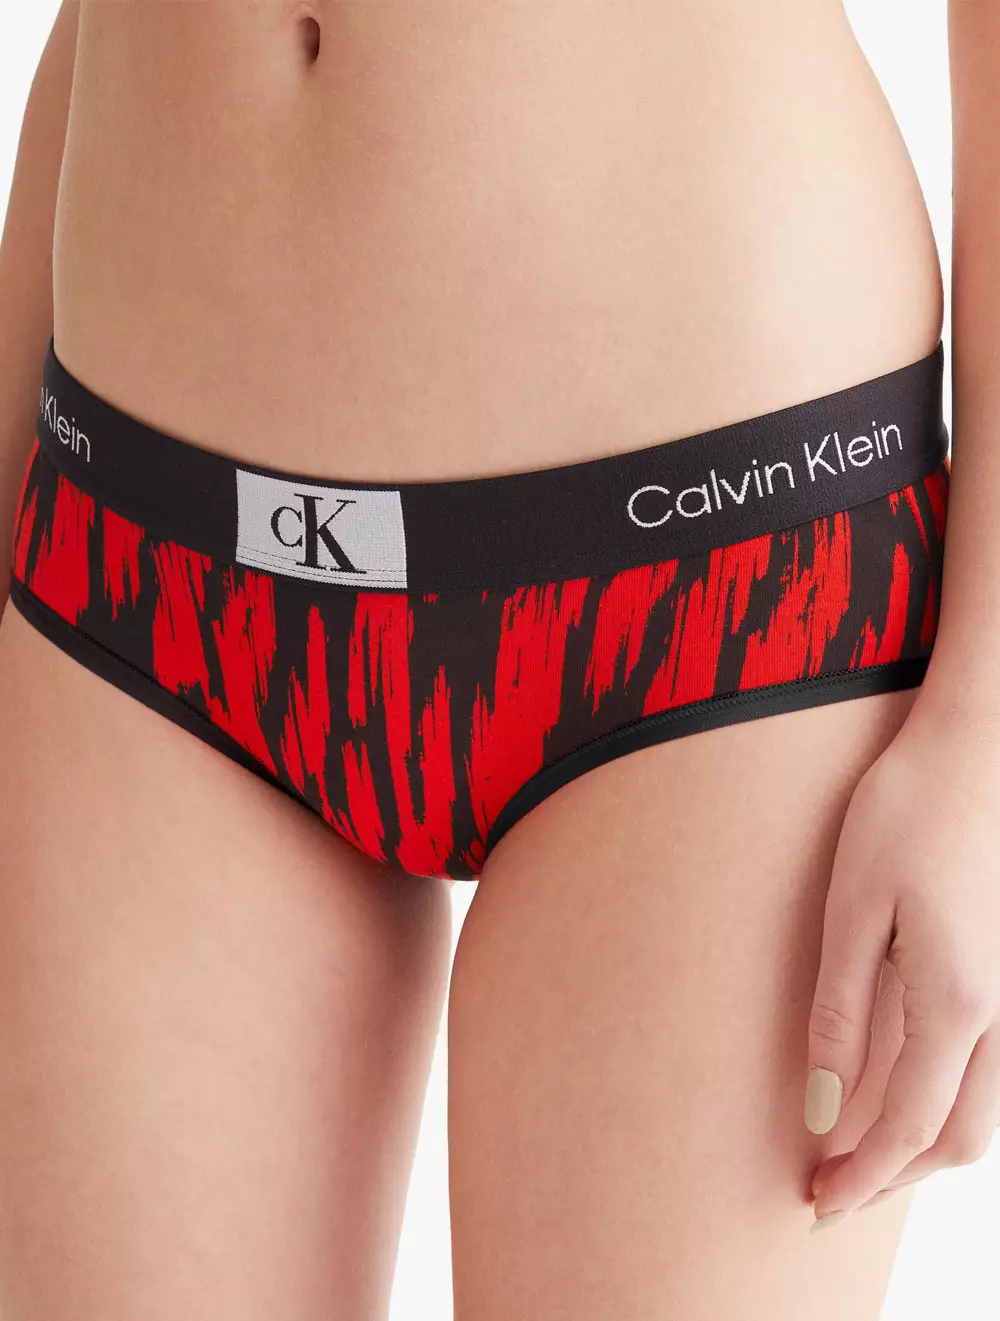 Buy Calvin Klein Hipster - Calvin Klein Underwear in Red/Black